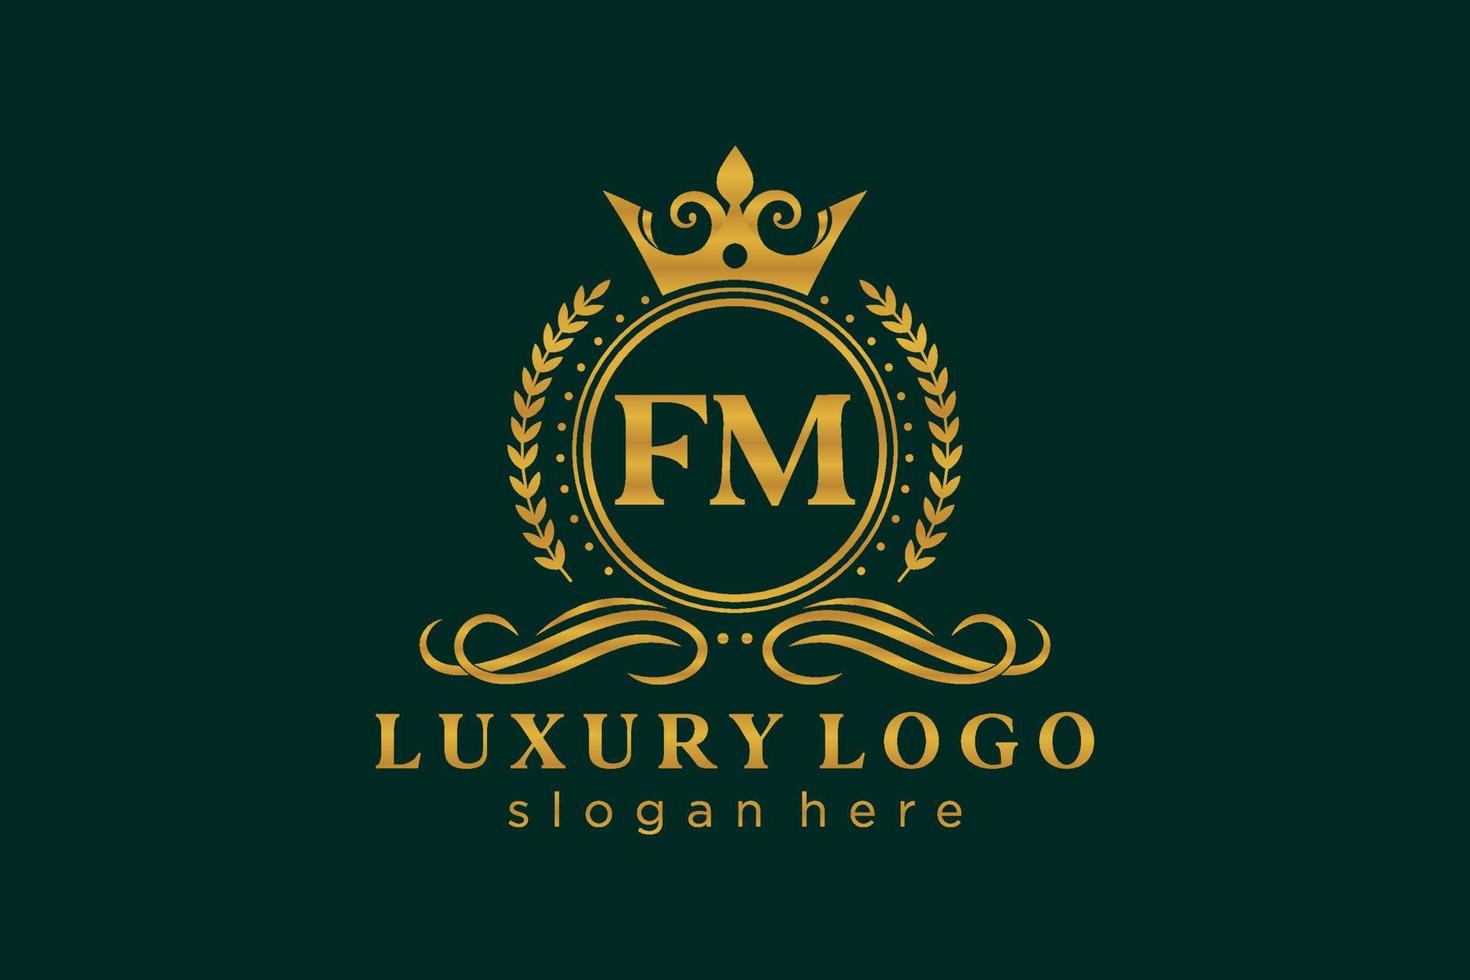 plantilla de logotipo de lujo real de carta fm inicial en arte vectorial para restaurante, realeza, boutique, cafetería, hotel, heráldica, joyería, moda y otras ilustraciones vectoriales. vector